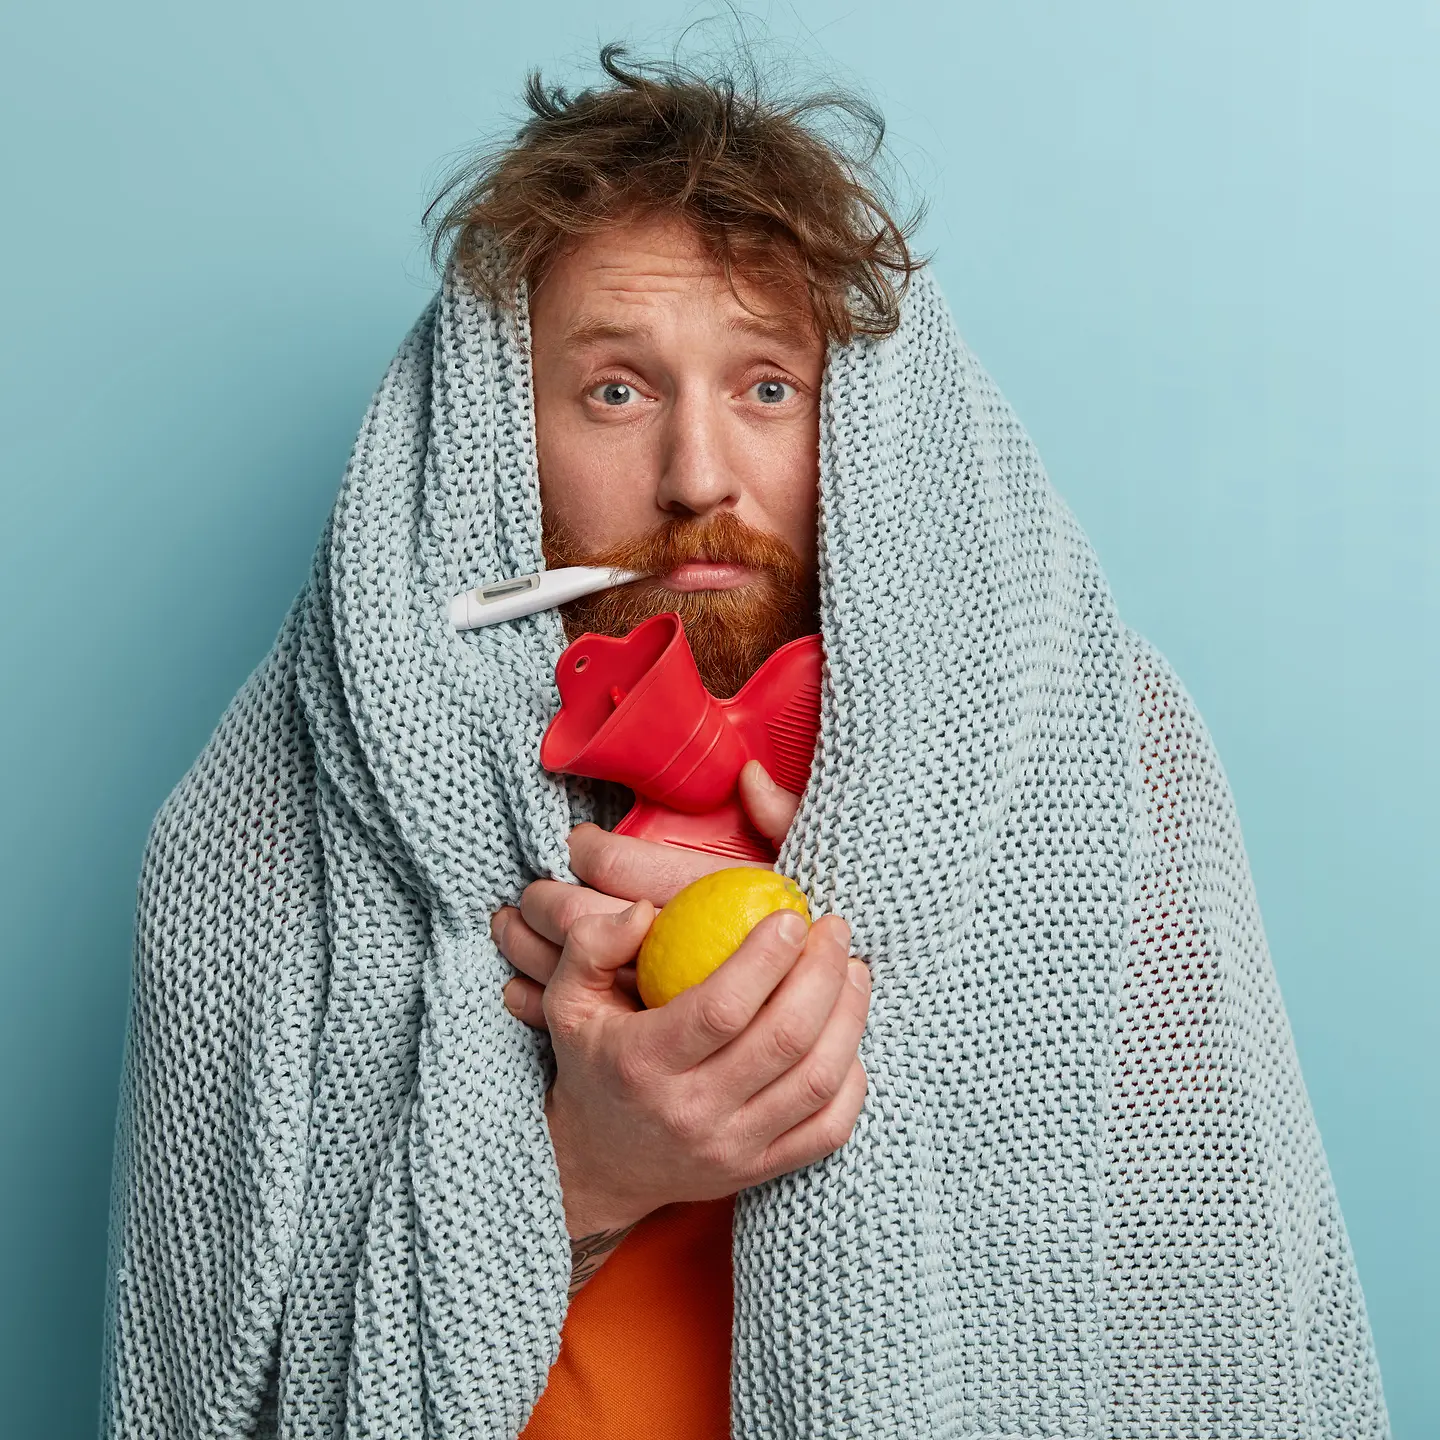 Zu sehen ist ein Mann, eingewickelt in eine Decke und mit Fieberthermometer, Wärmflasche und einer Zitrone